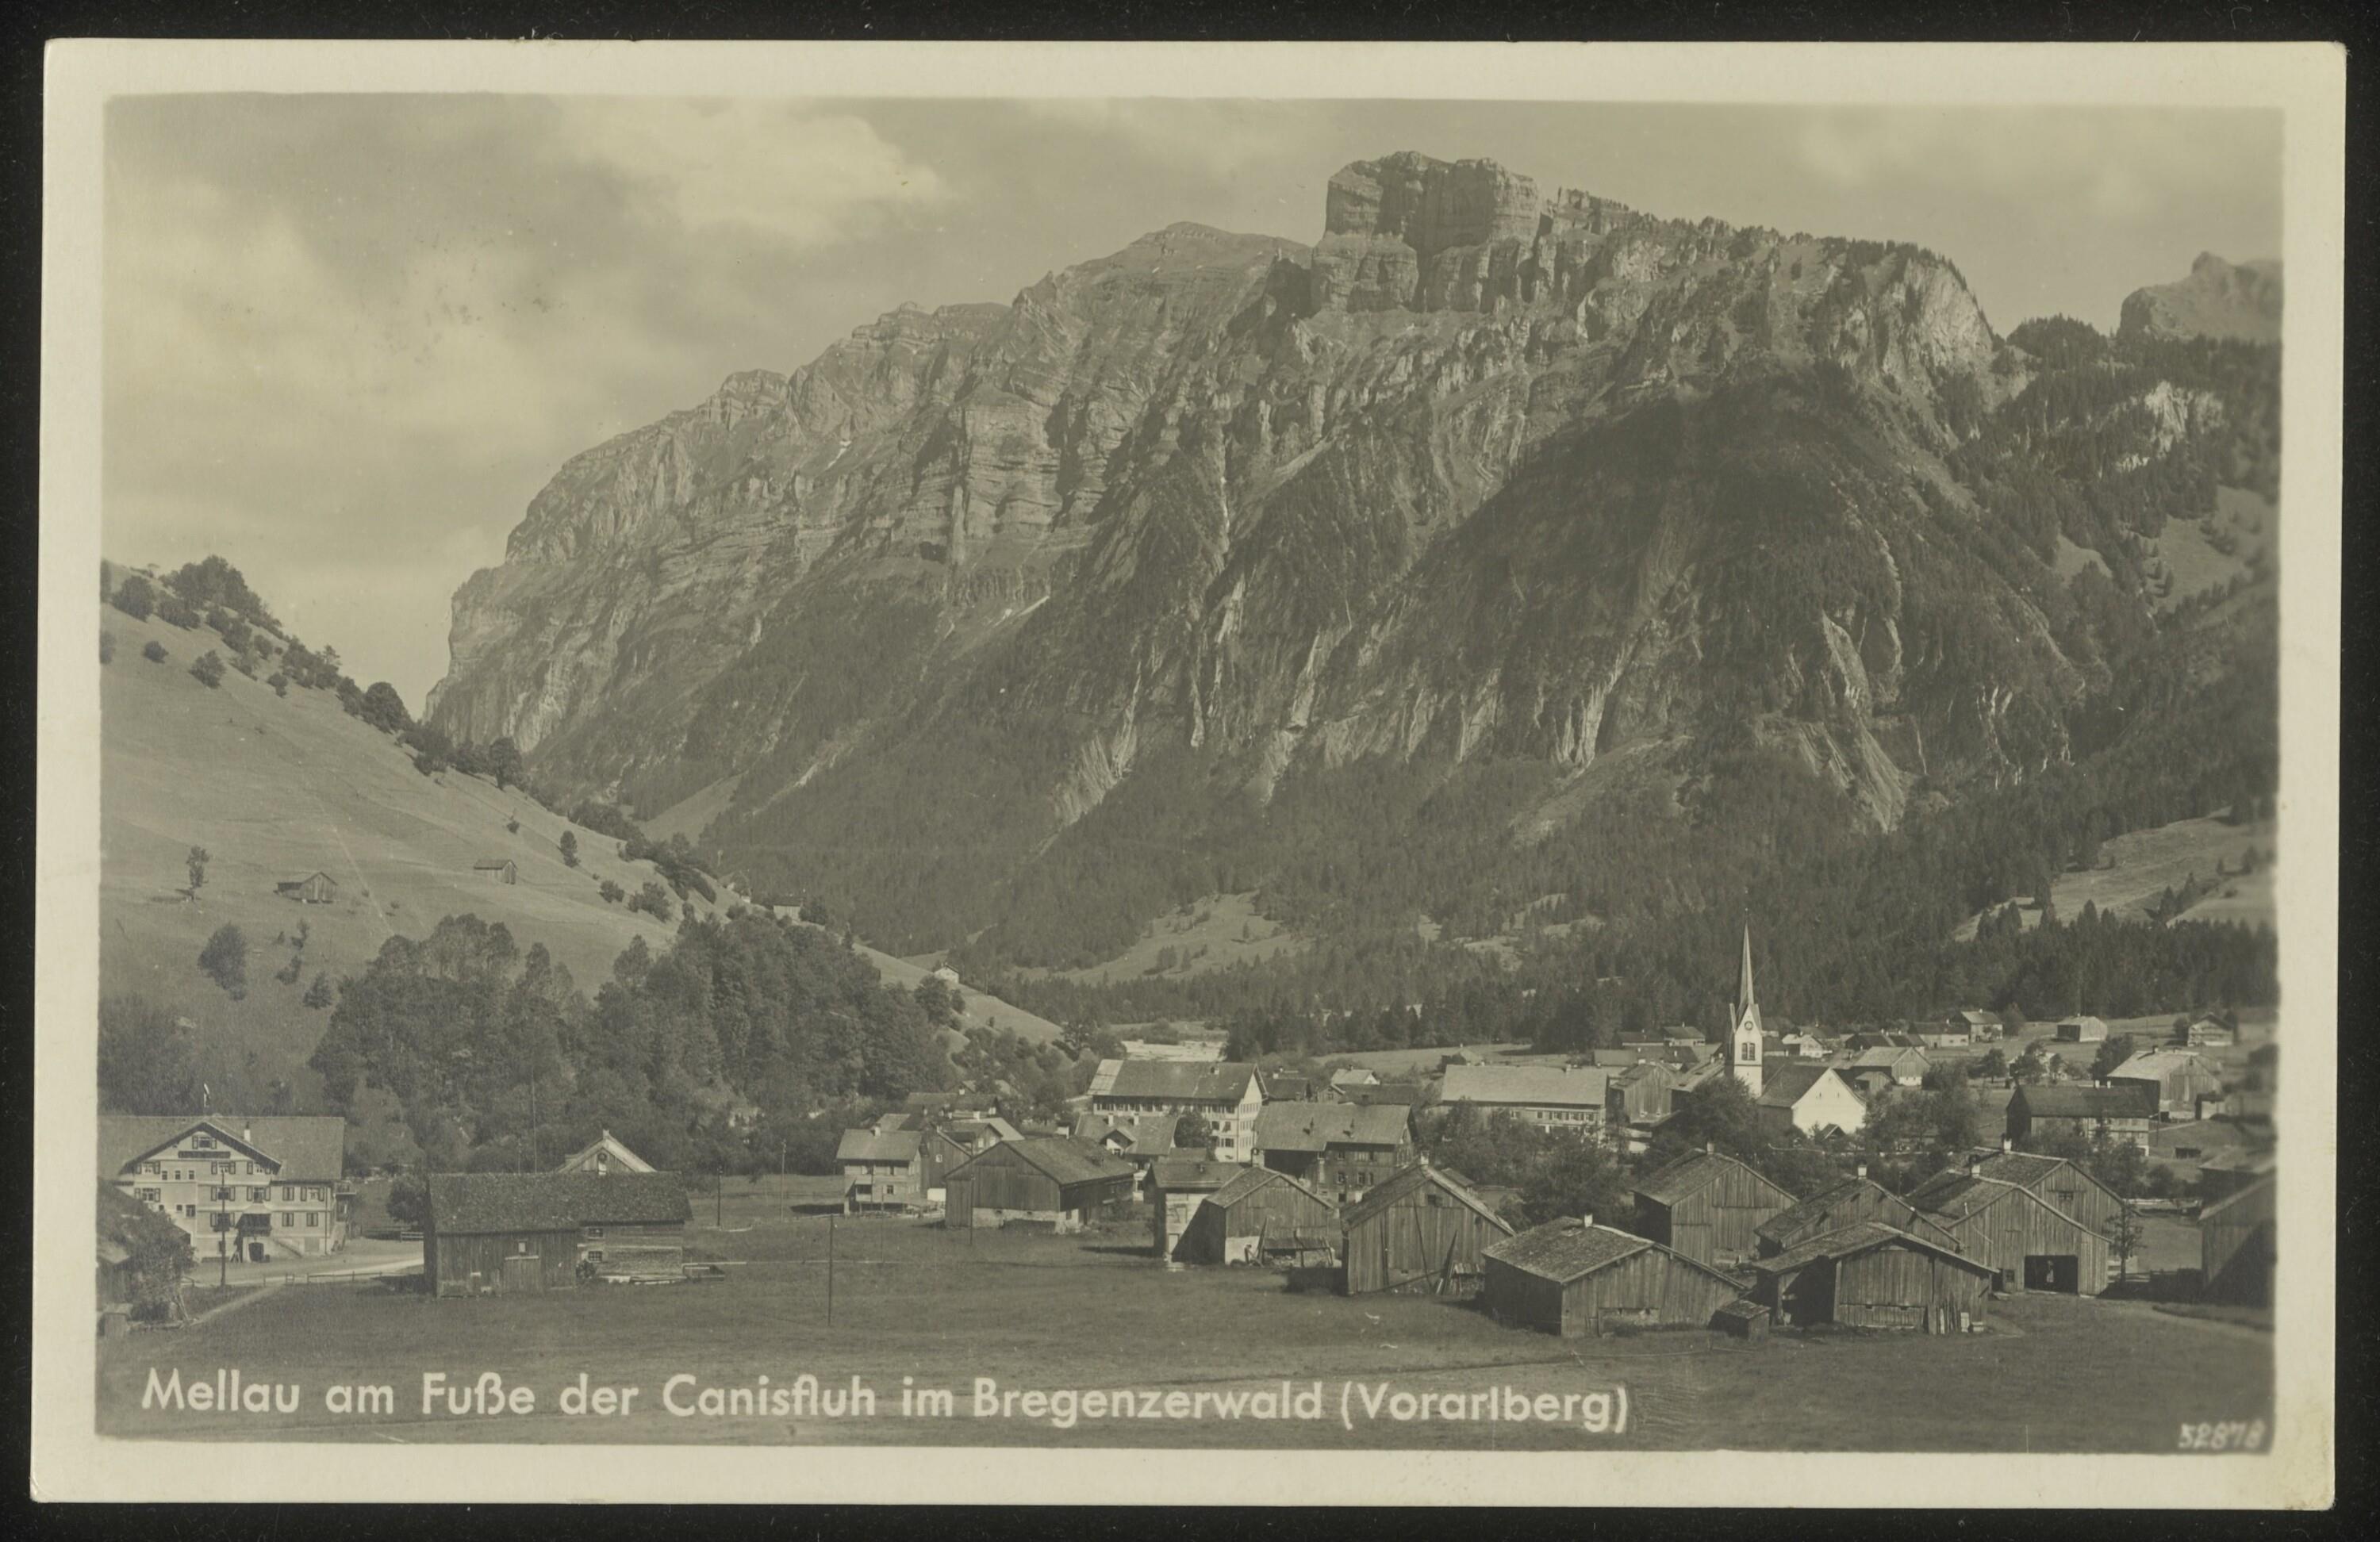 Mellau am Fuße der Canisfluh im Bregenzerwald (Vorarlberg)></div>


    <hr>
    <div class=